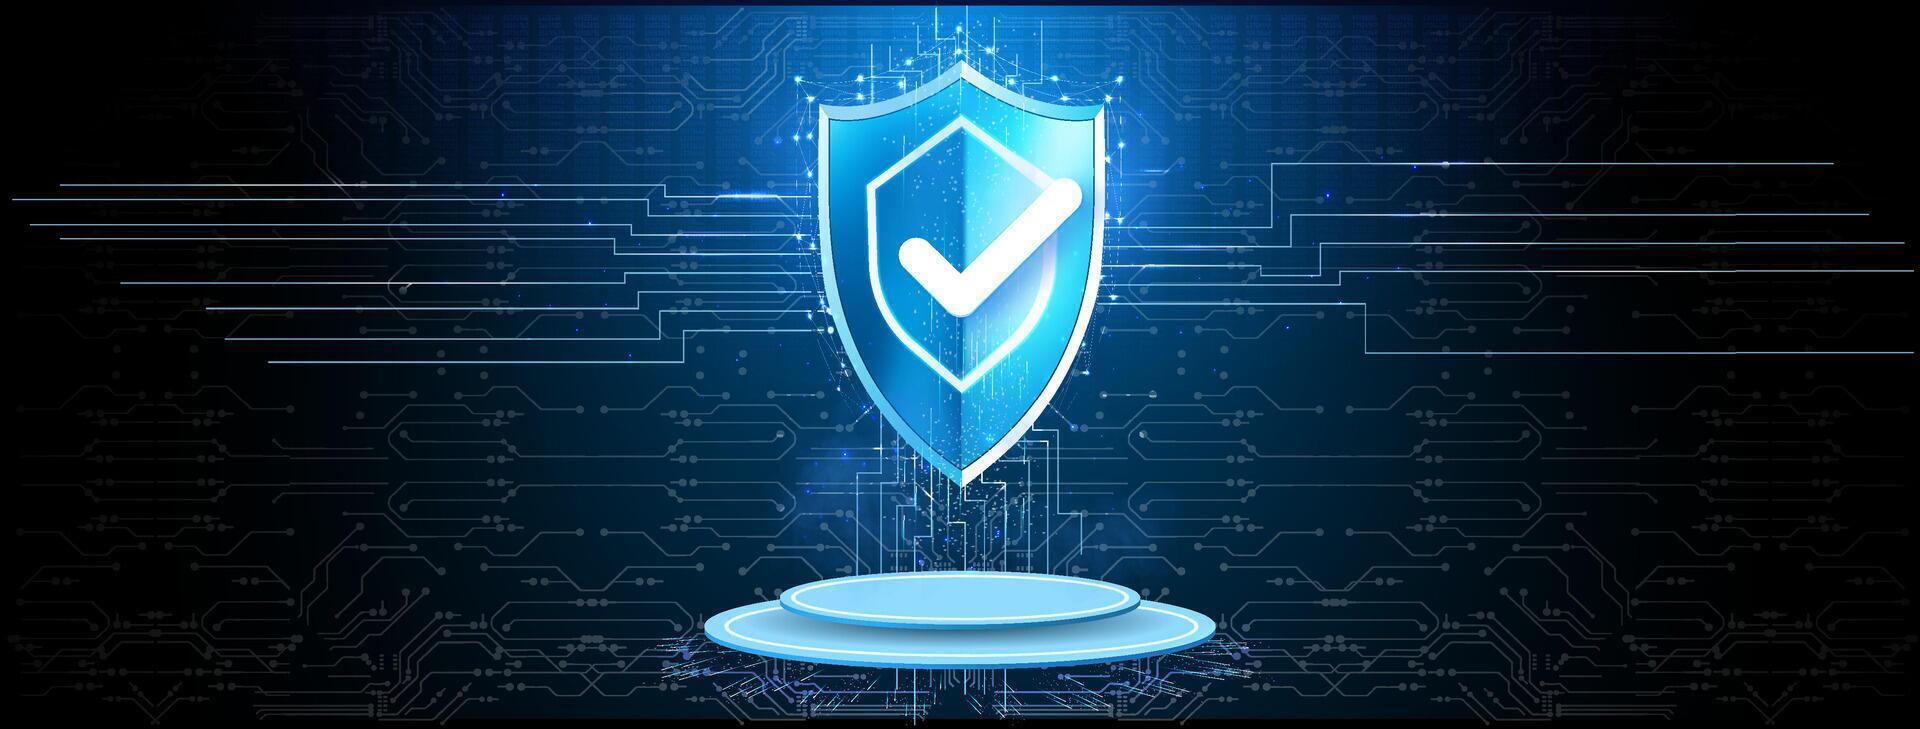 Cyber Sicherheit Konzept.Cybersicherheit, Antivirus, Verschlüsselung, Daten Schutz. Software Entwicklung. Sicherheit Internet Technologie vektor